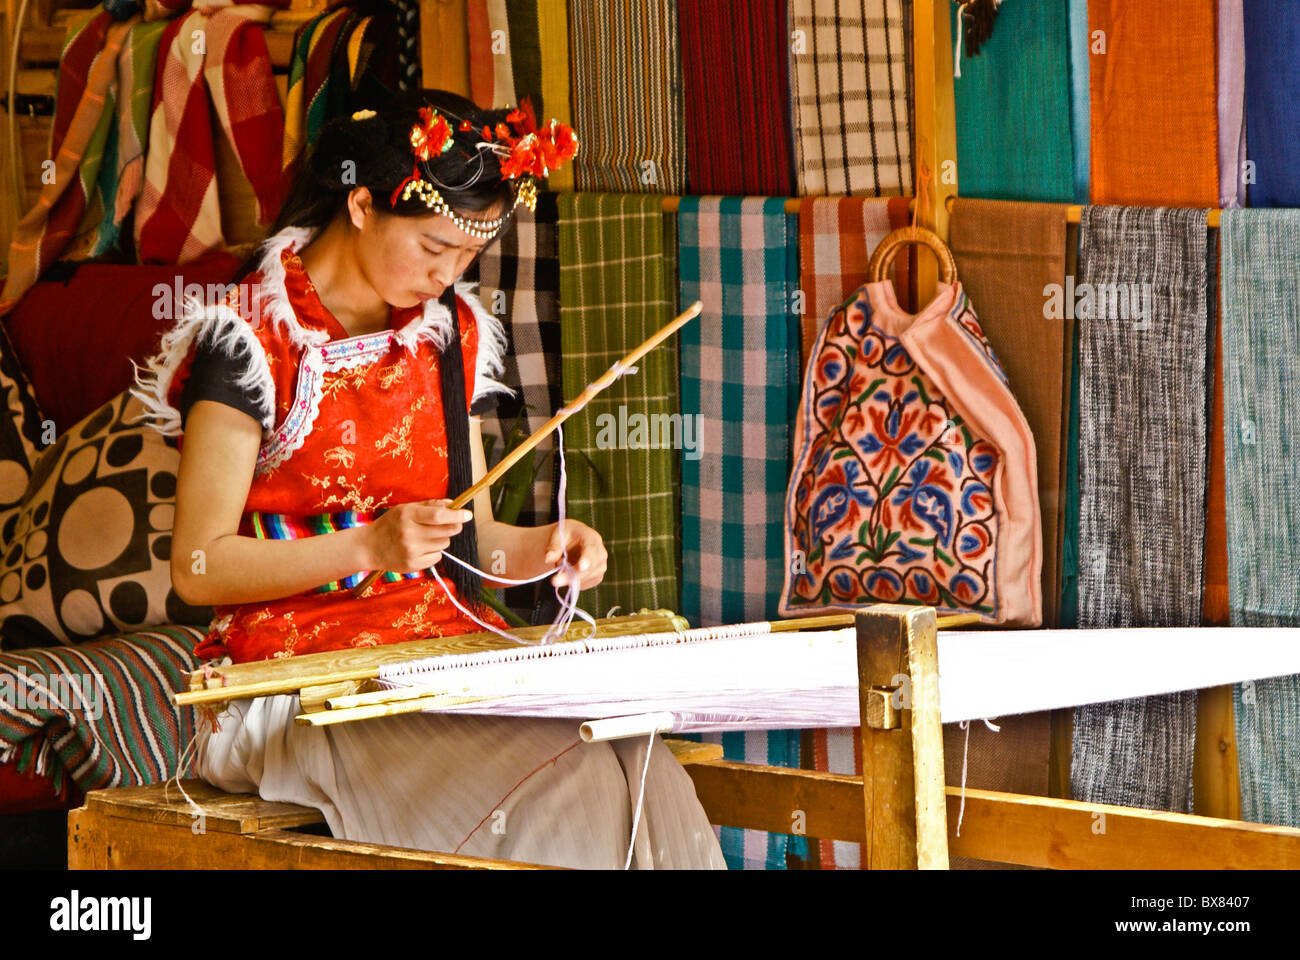 Young woman weaving in textile shop, Lijiang, Yunnan, China Stock Photo